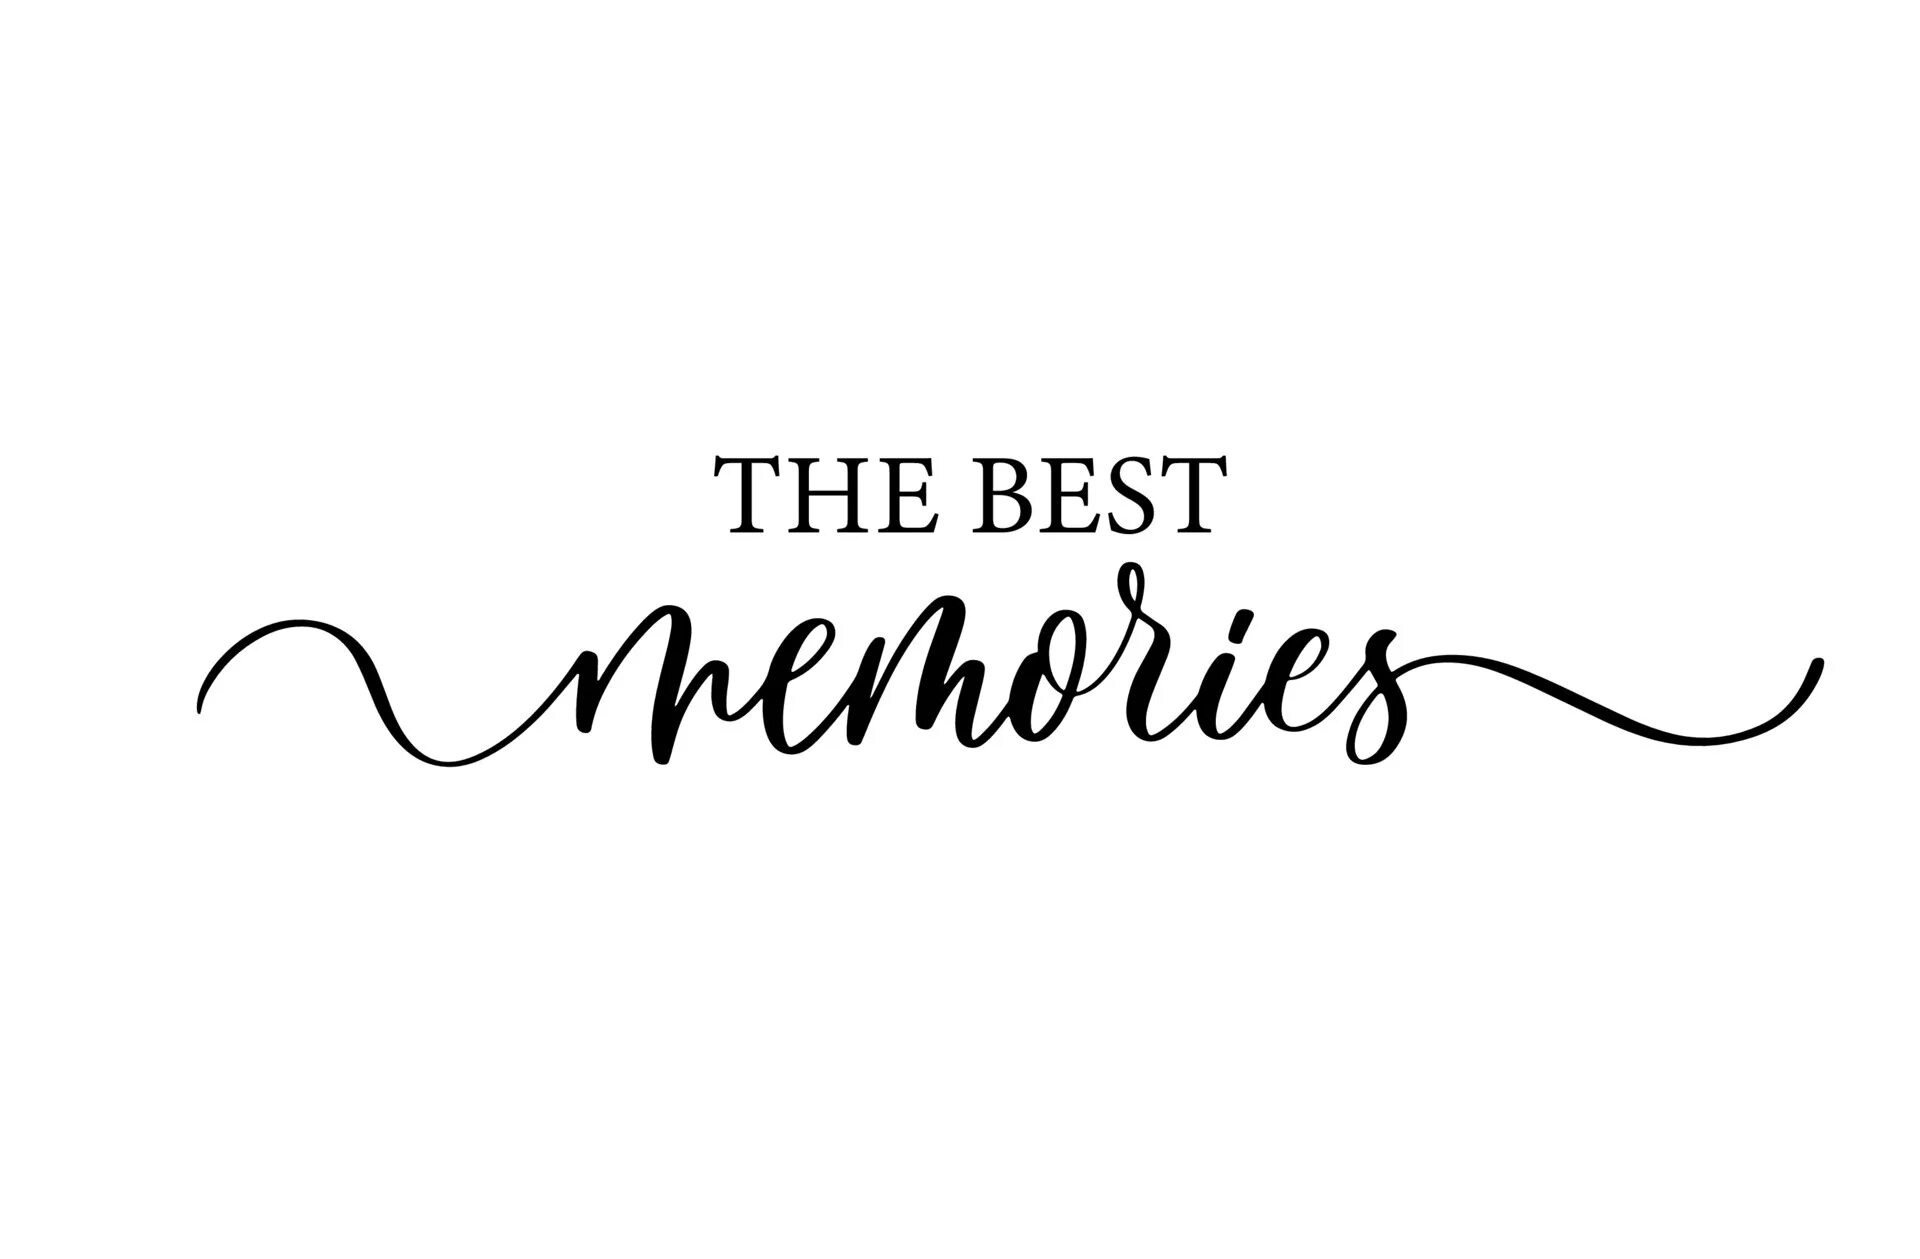 Best memories